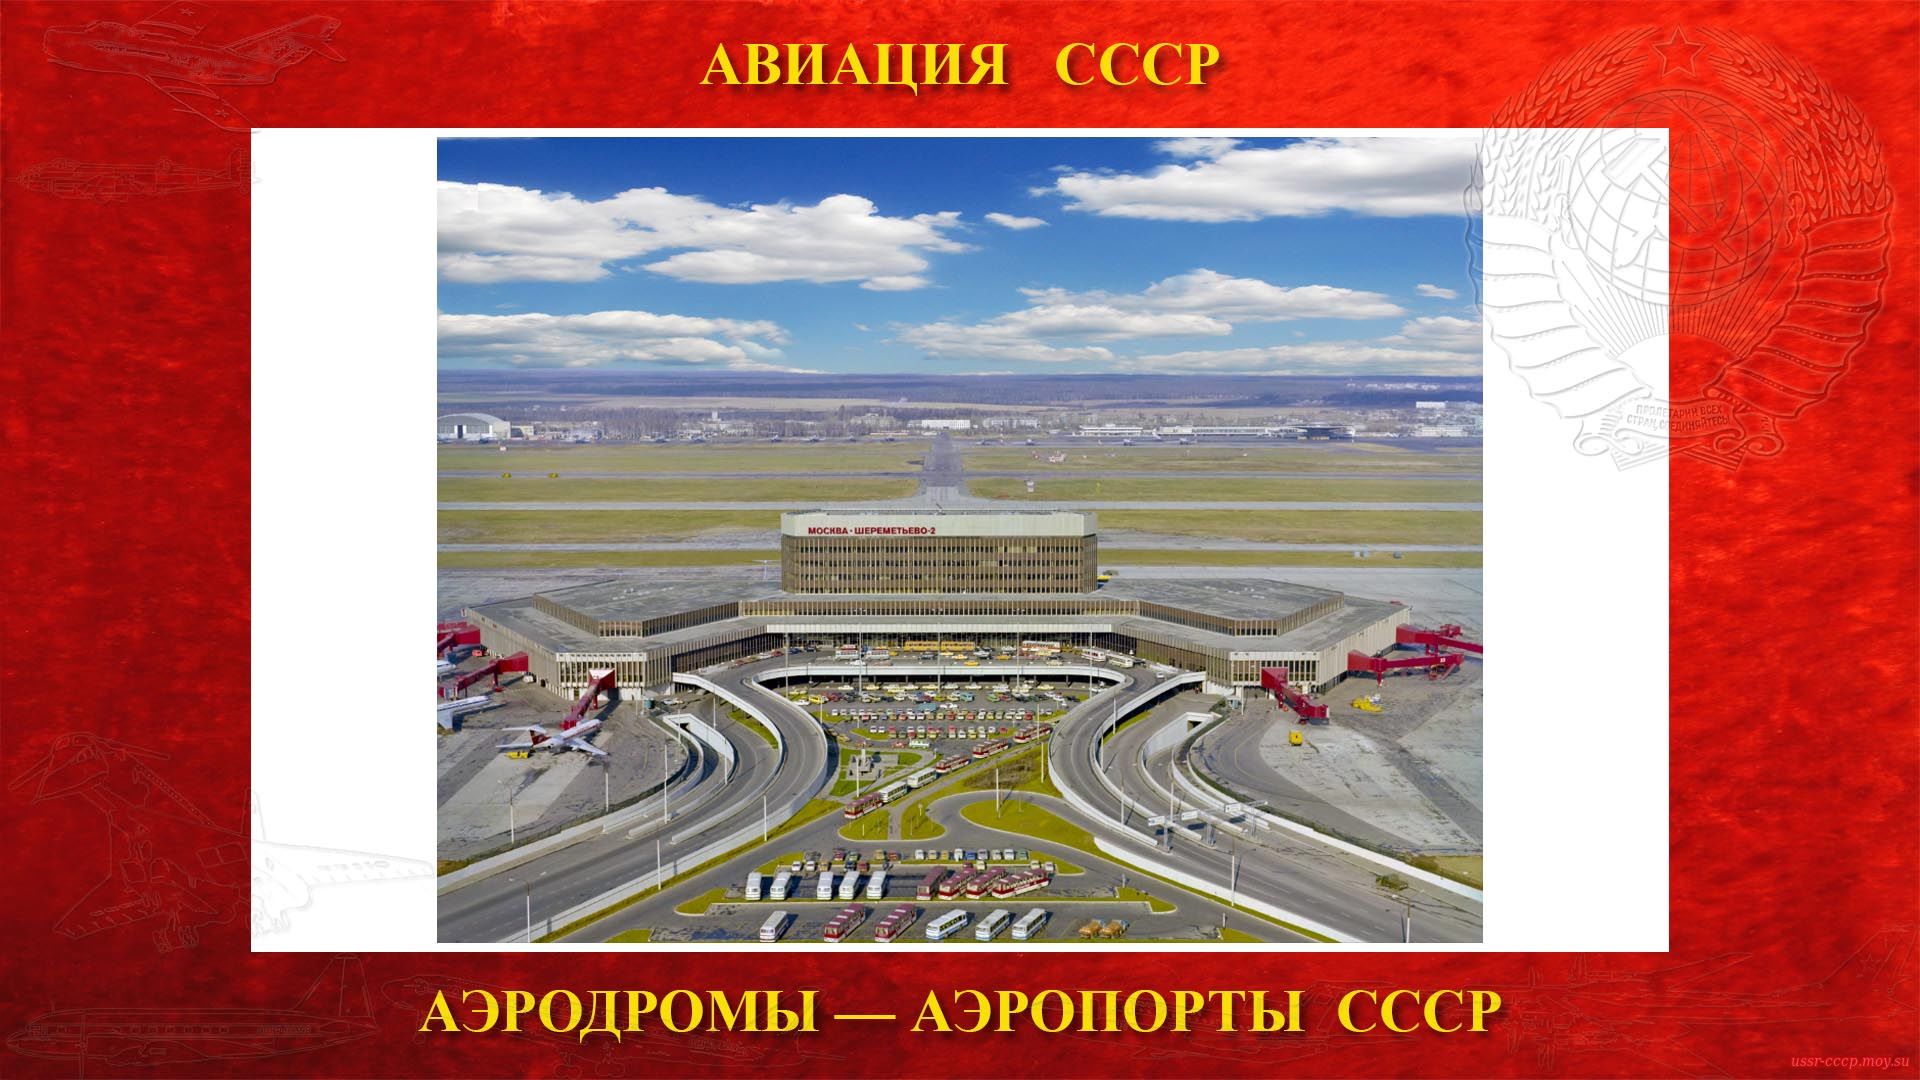 Аэропорт Шереметьево (повествование)